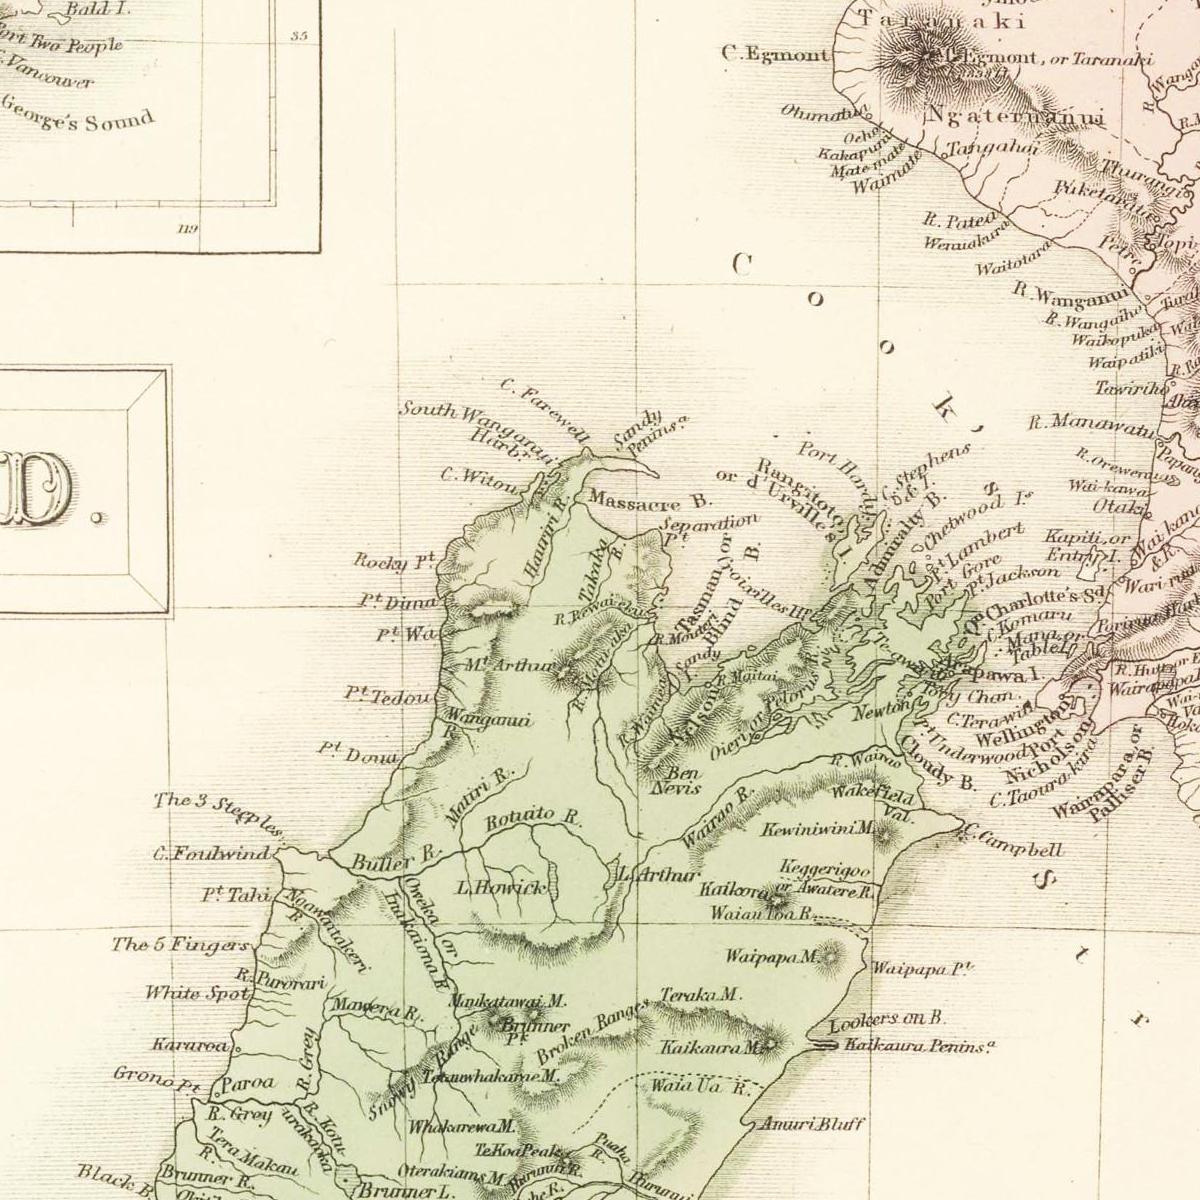 Historische Landkarte Neuseeland um 1854